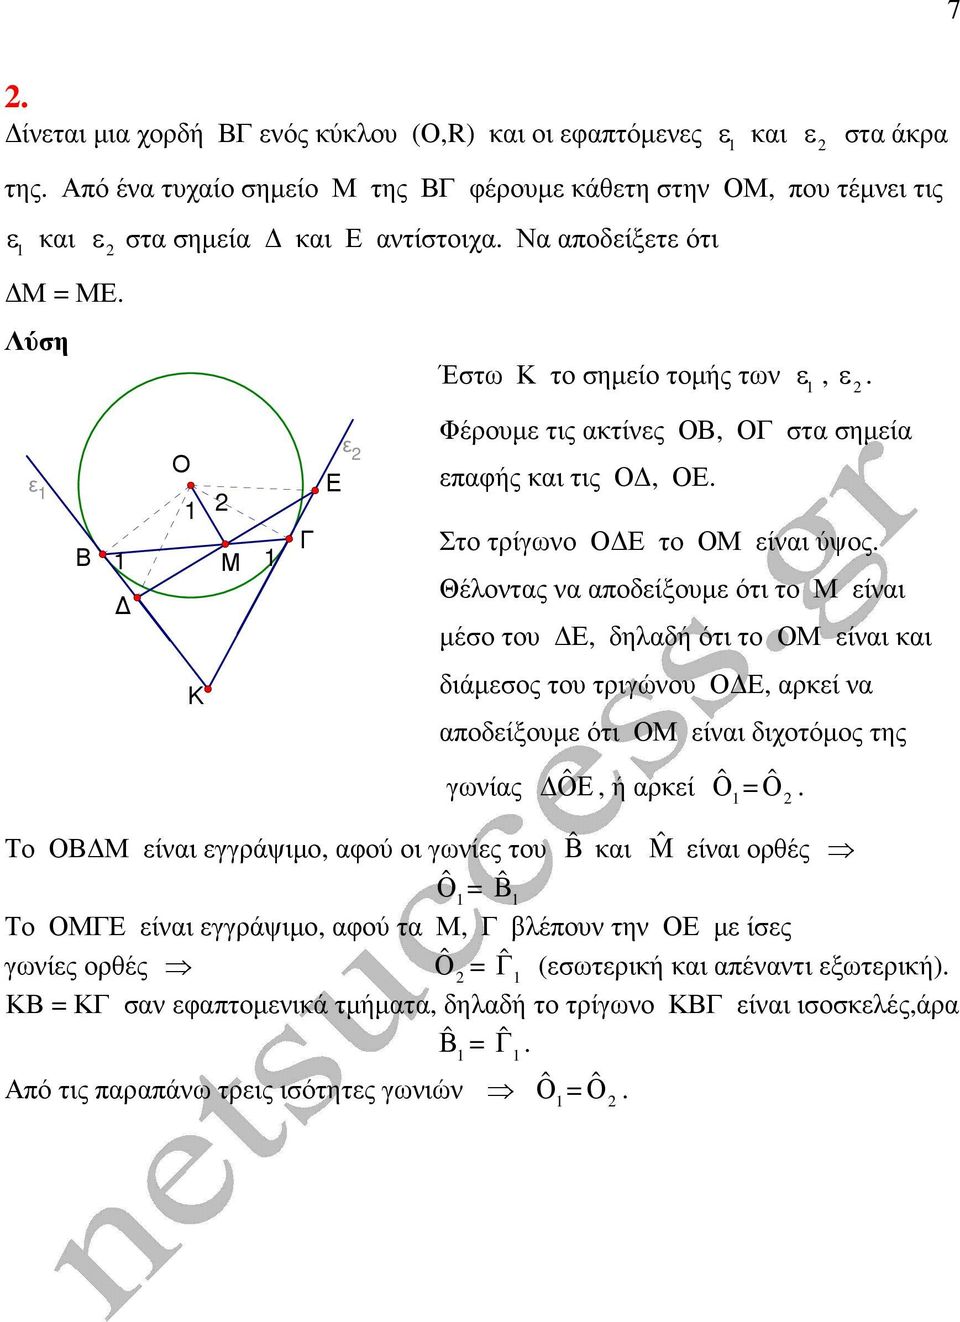 Θέλοντας να αποδείξουµε ότι το Μ είναι µέσο του, δηλαδή ότι το ΟΜ είναι και Κ διάµεσος του τριγώνου Ο, αρκεί να αποδείξουµε ότι ΟΜ είναι διχοτόµος της γωνίας Ο ˆ, ή αρκεί ˆΟ = ˆΟ.